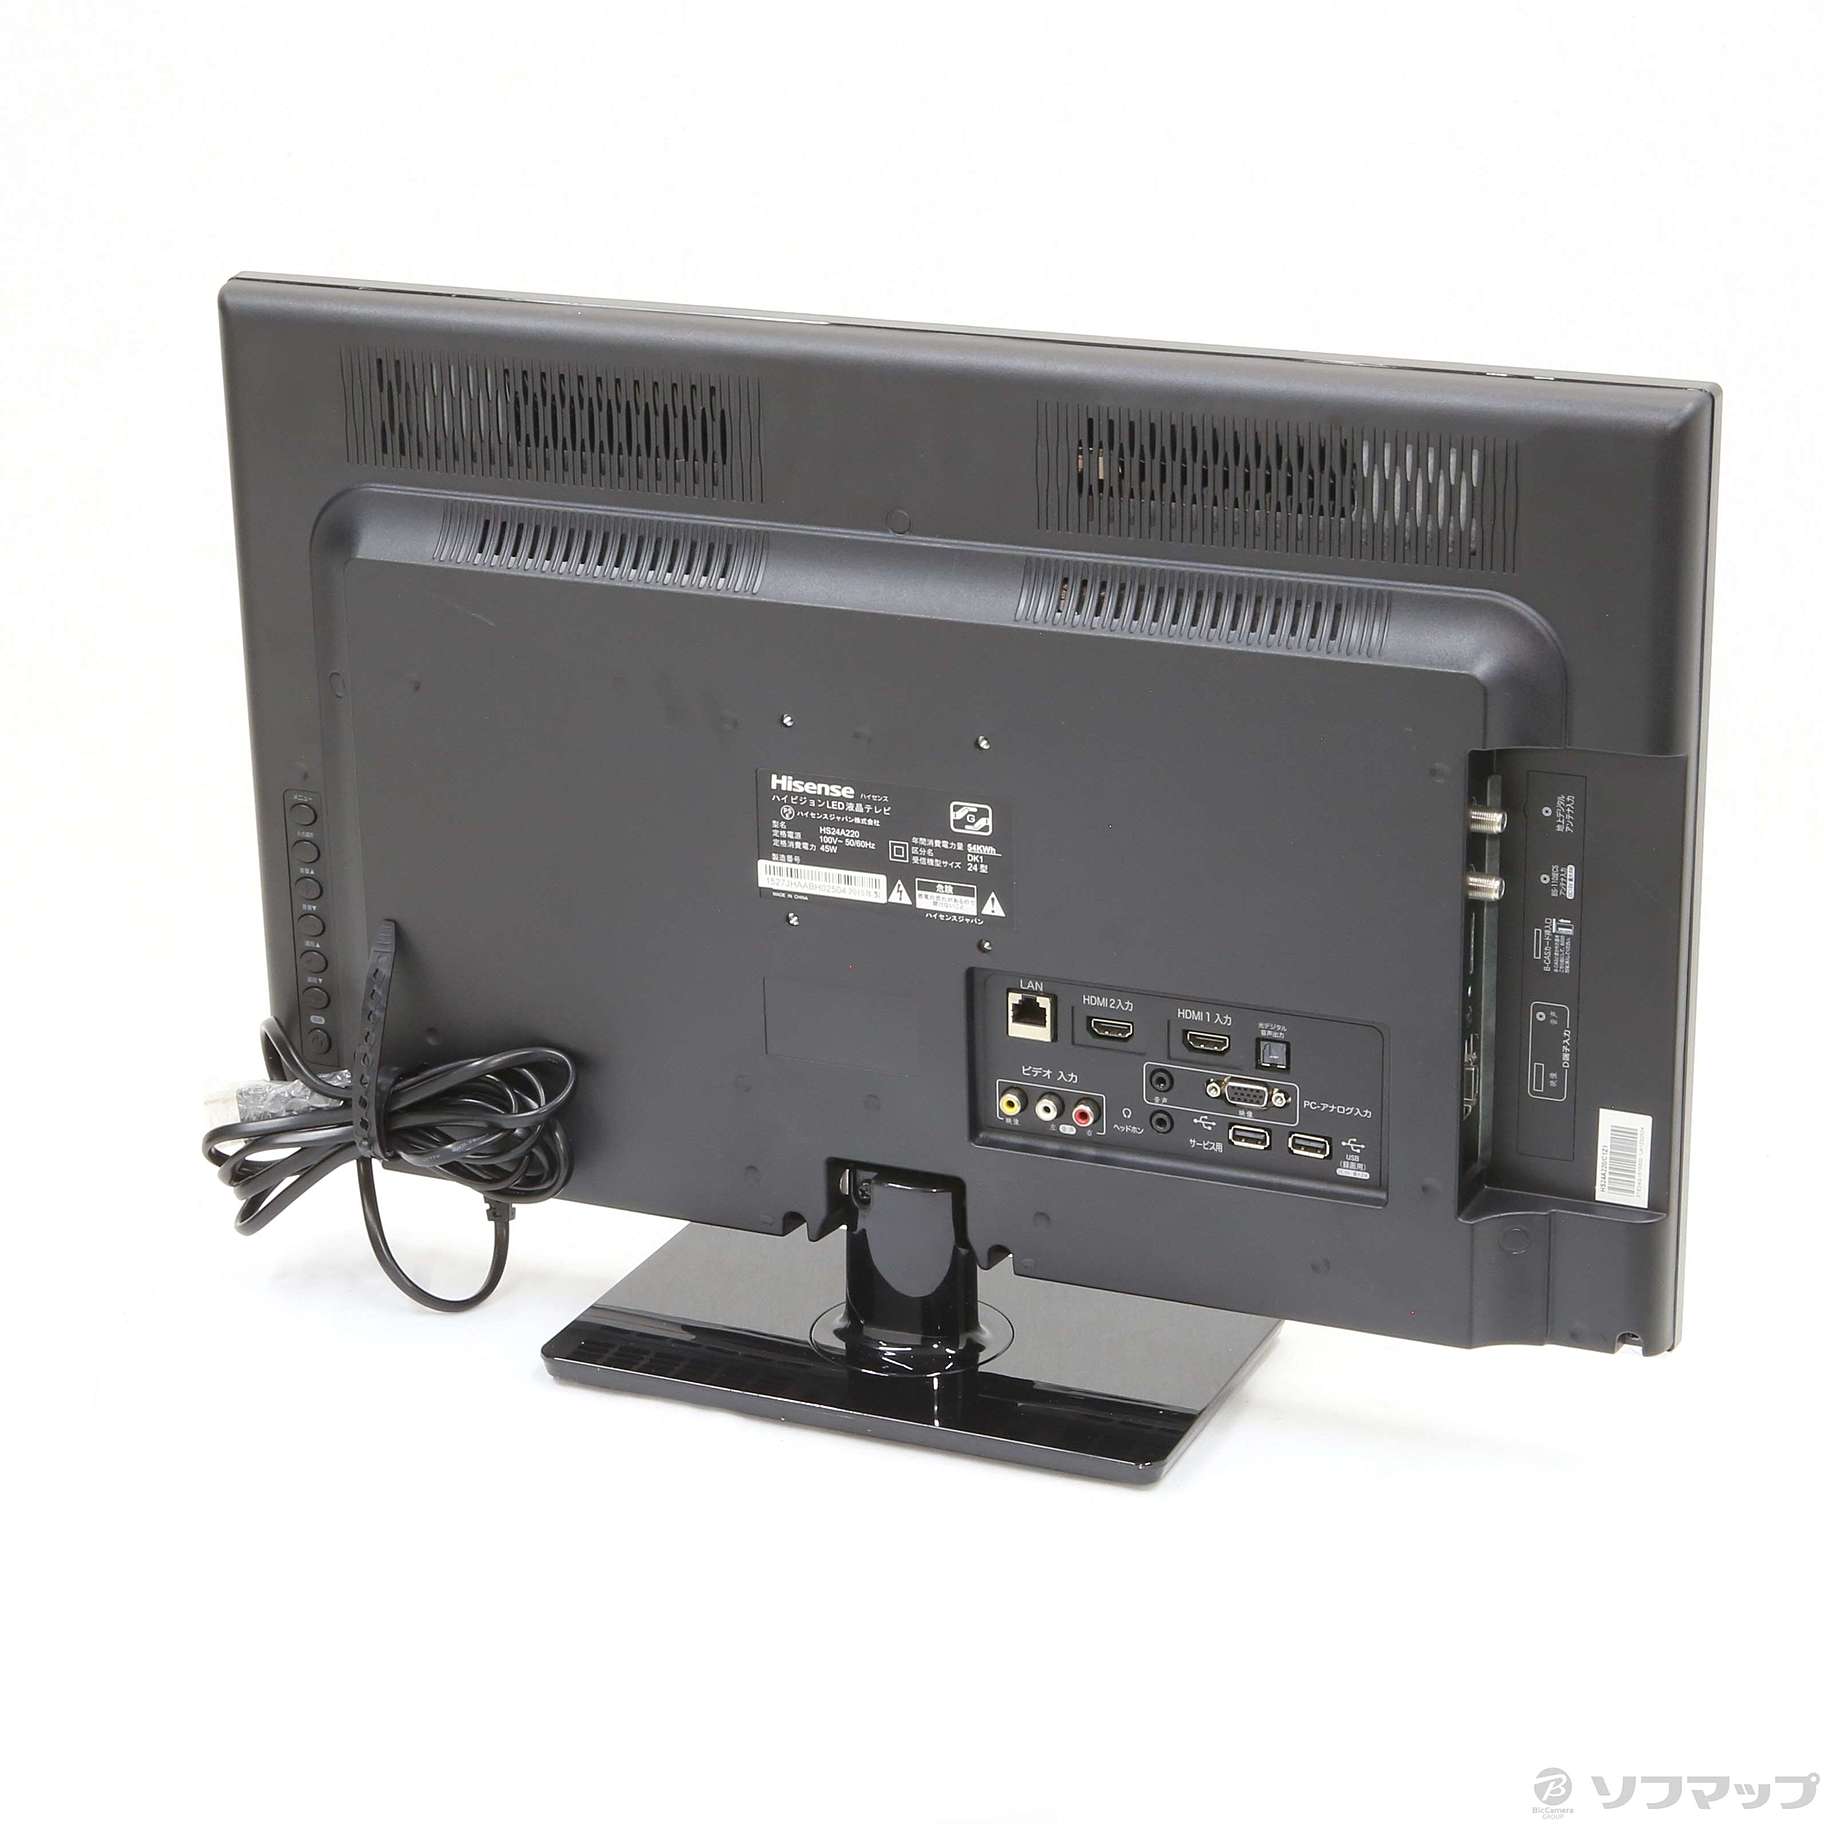 Hisense ハイビジョンLED液晶テレビ HS24A220 - テレビ